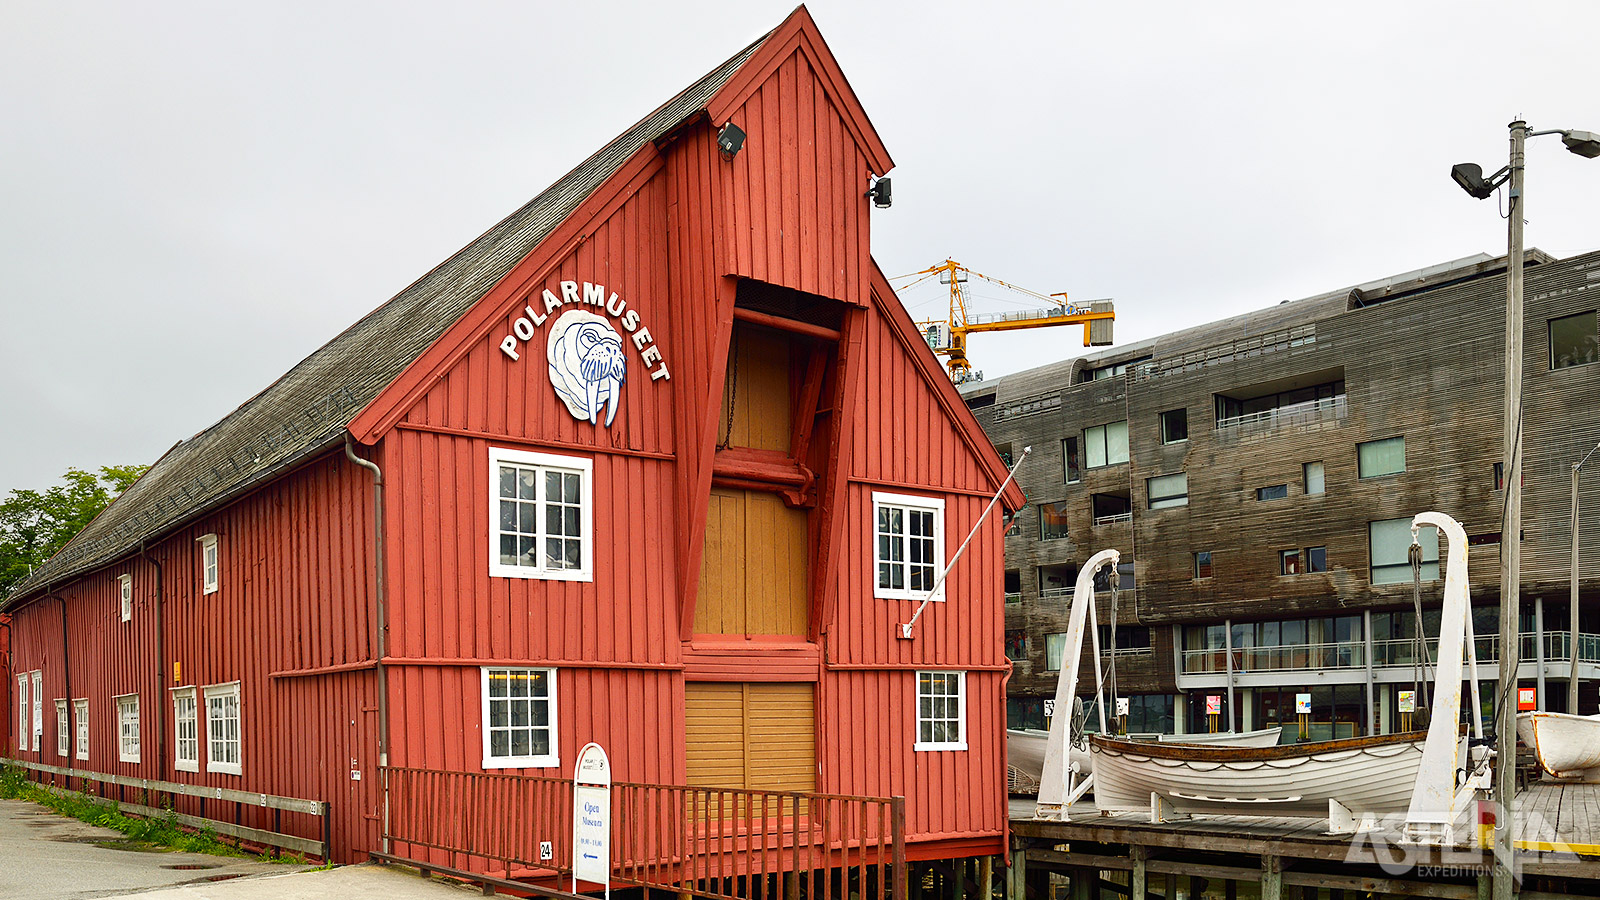 In het Polar Museum van Tromsø kan je terecht voor de boeiende geschiedenis, cultuur en maritiem erfgoed van het Noordpoolgebied